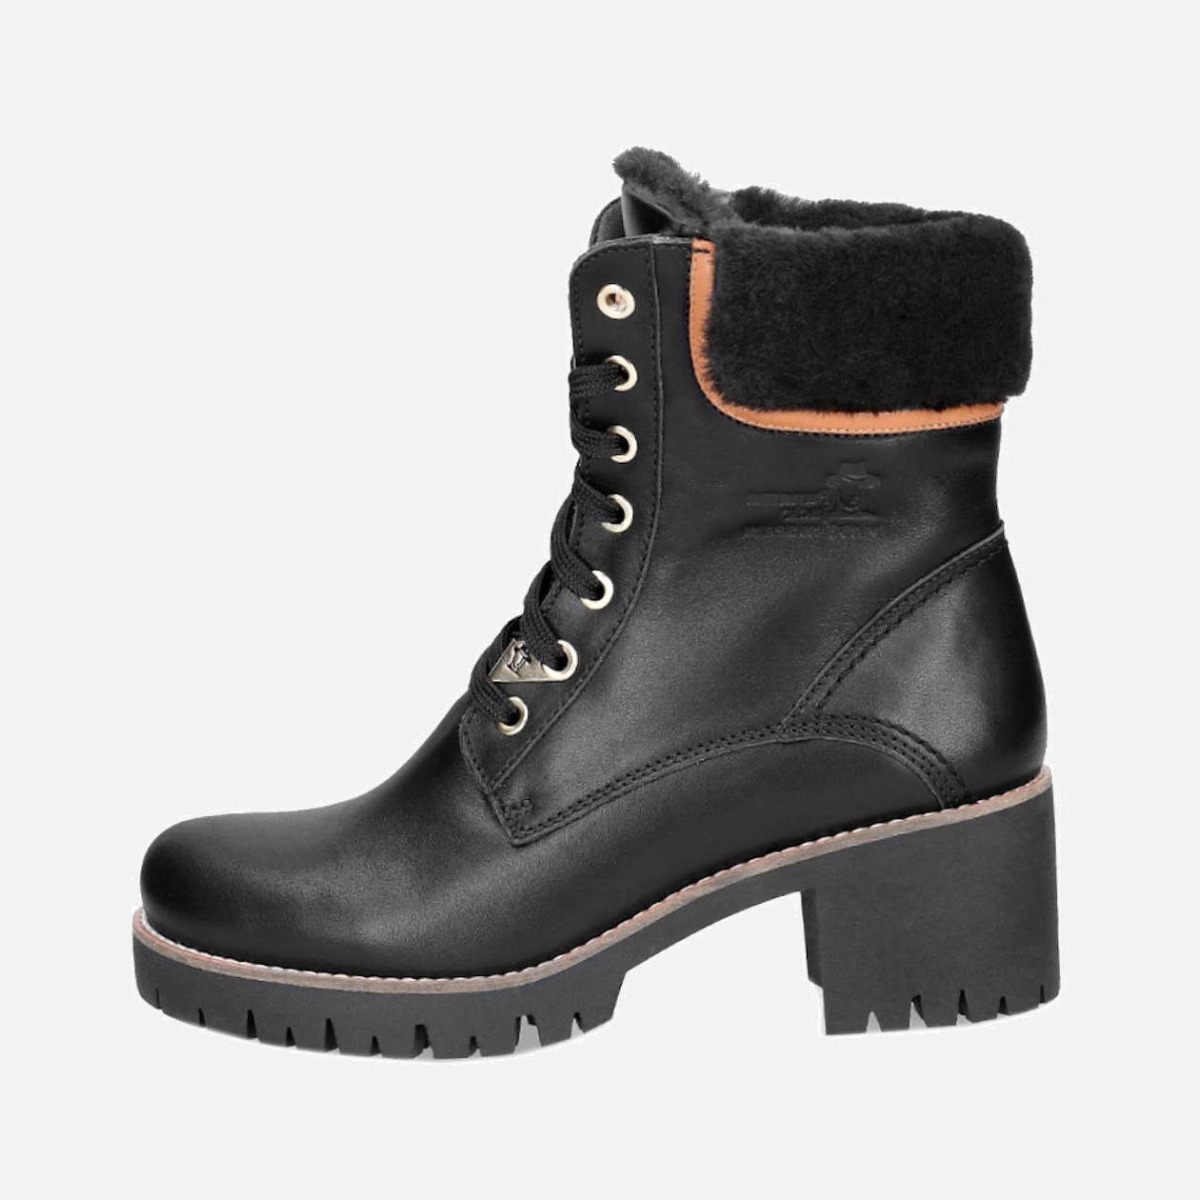 panama jack winter boots